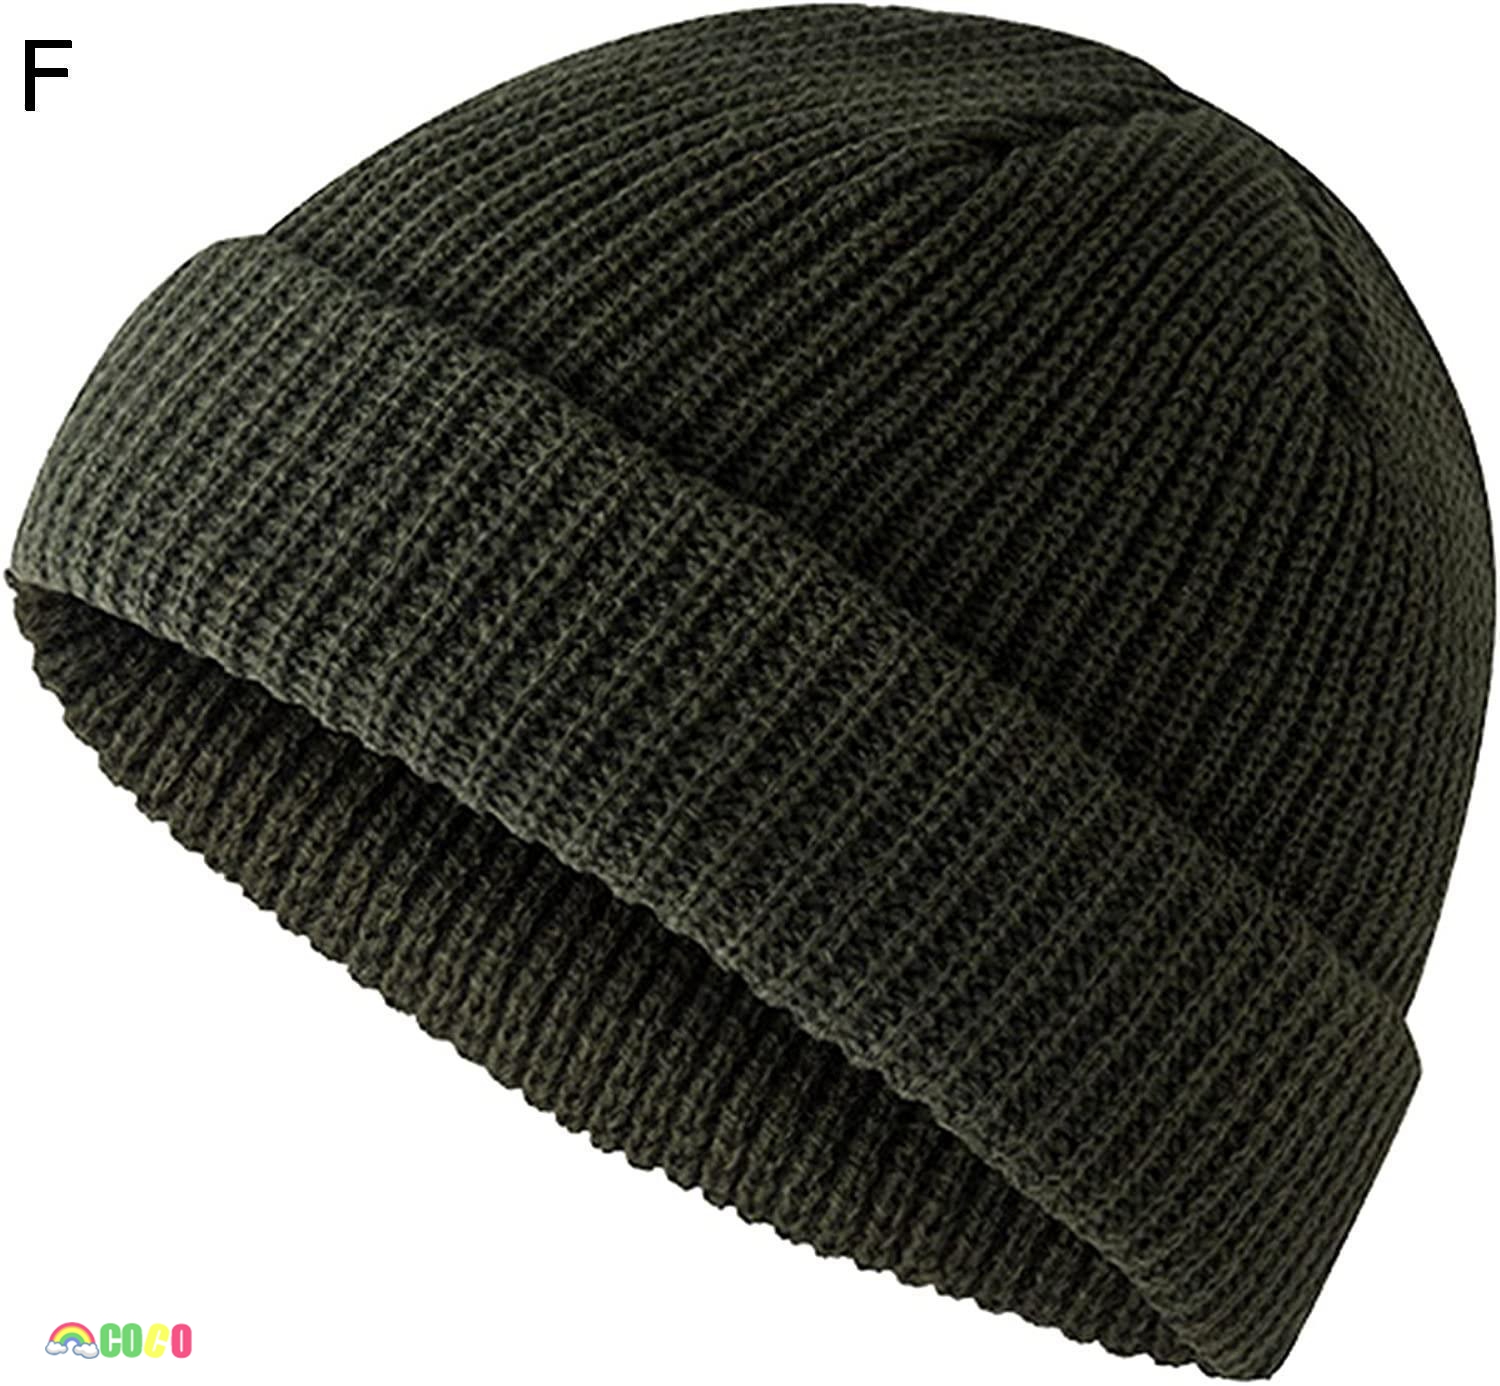 ニット帽 メンズ 秋 冬 肌に優しい 軽くて暖かいの素材 大きいサイズ 防寒帽子 大きいサイズ 厚手...